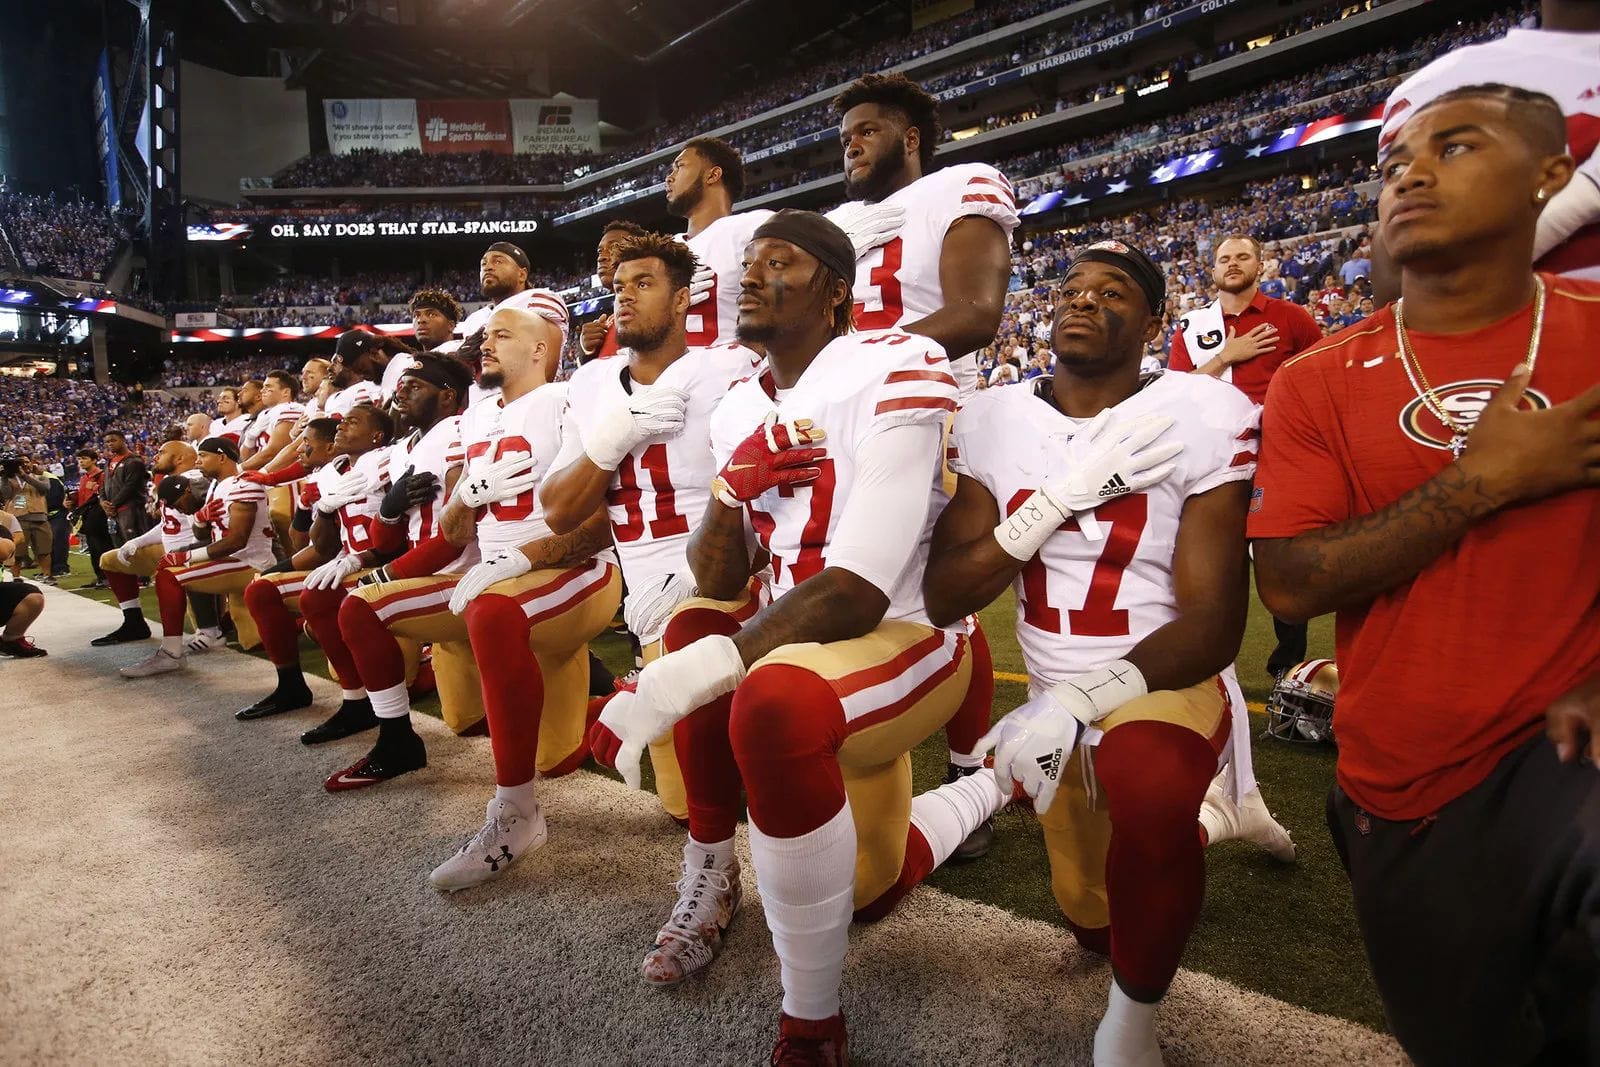 Symbolischer Kniefall: Spieler der Football-Mannschaft San Francisco 49ers knien in Indianapolis während der US-Hymne nieder - aus Protests gegen rassistische Ausschreitungen.